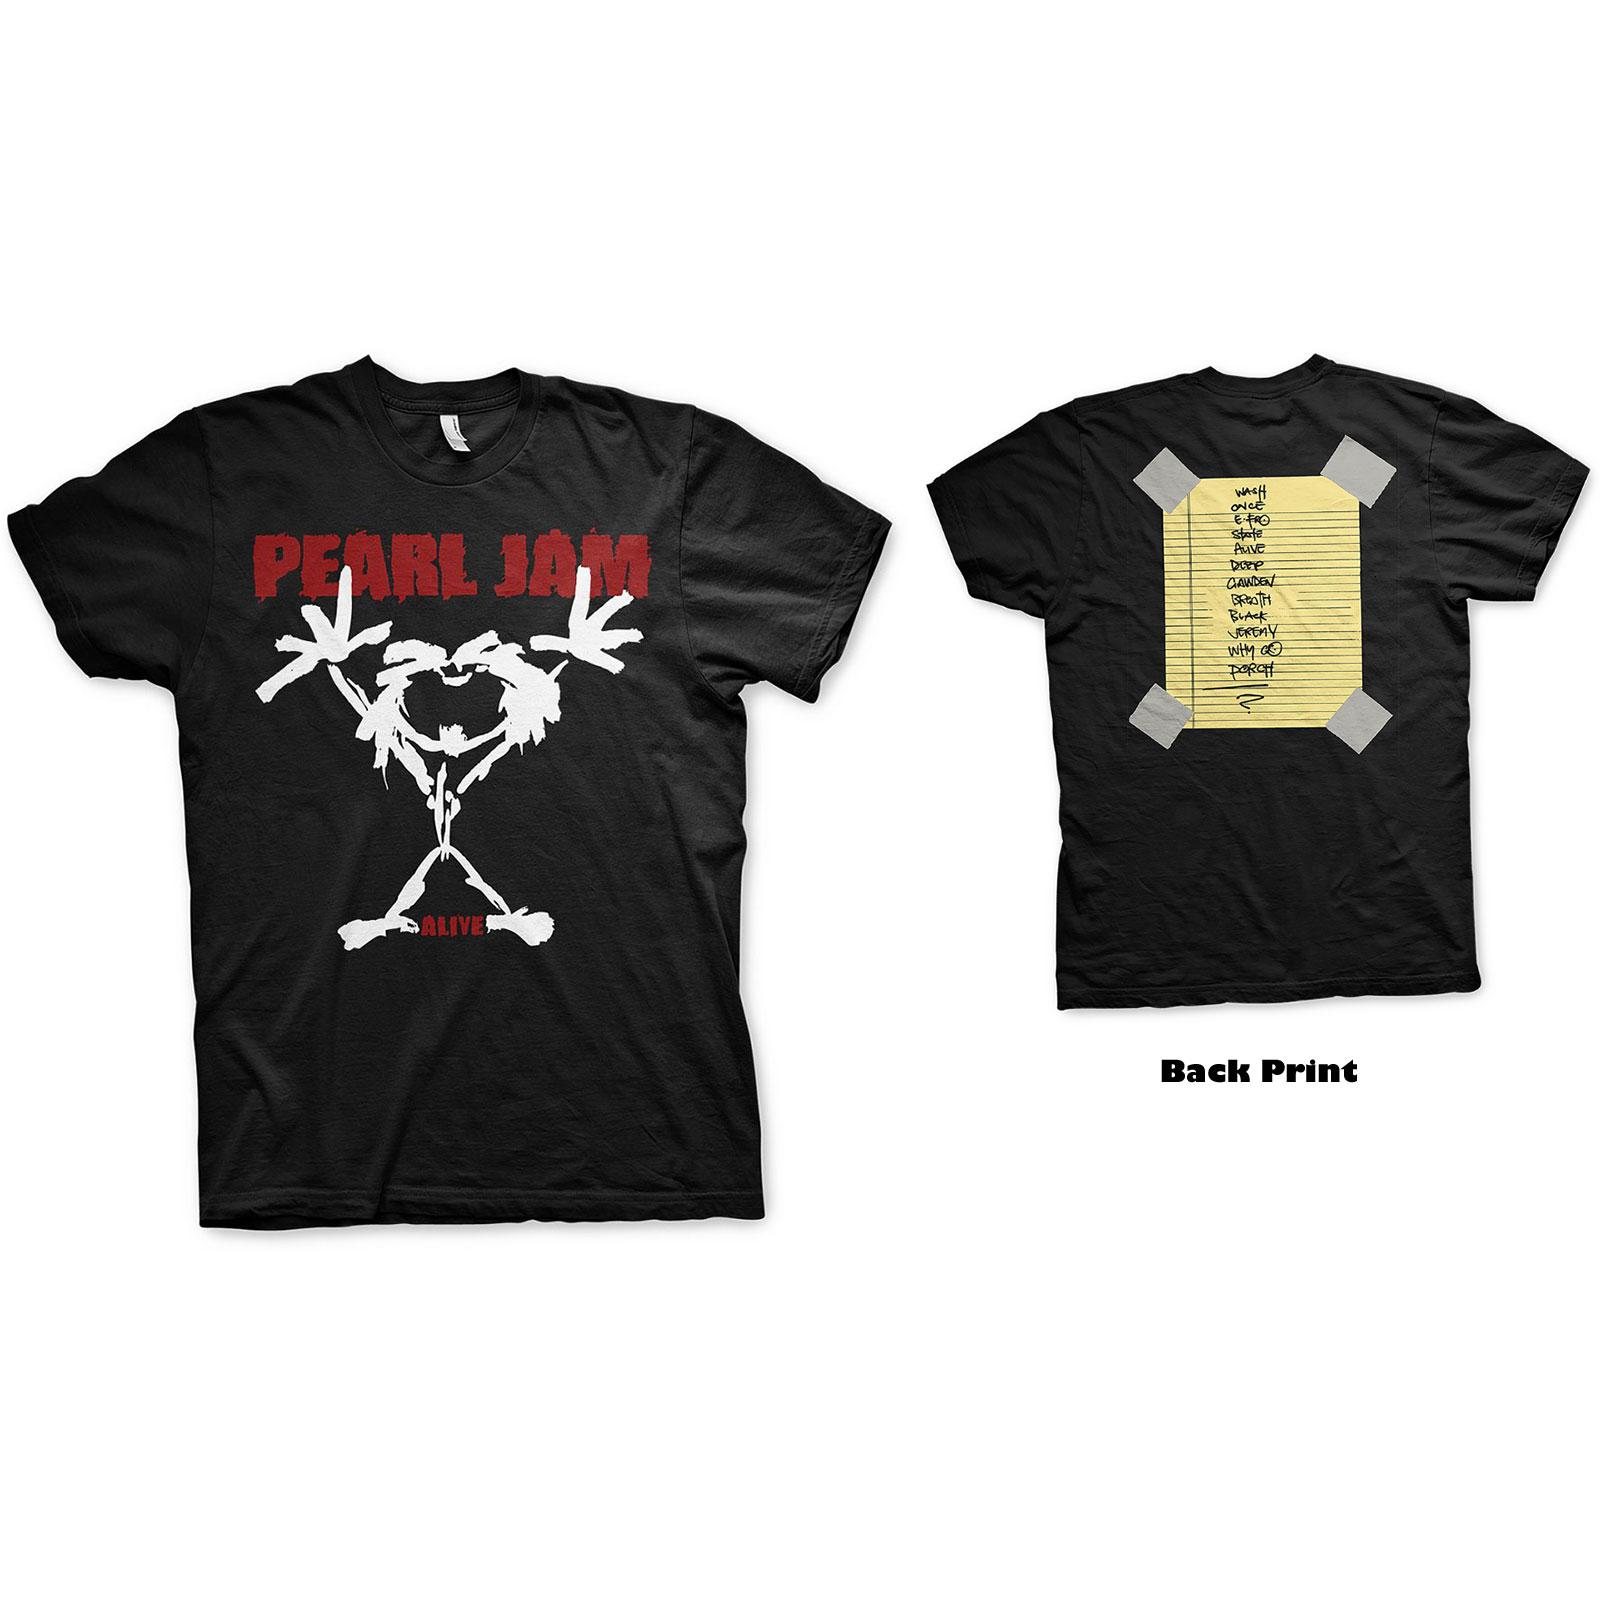 T-shirt Pearl Jam